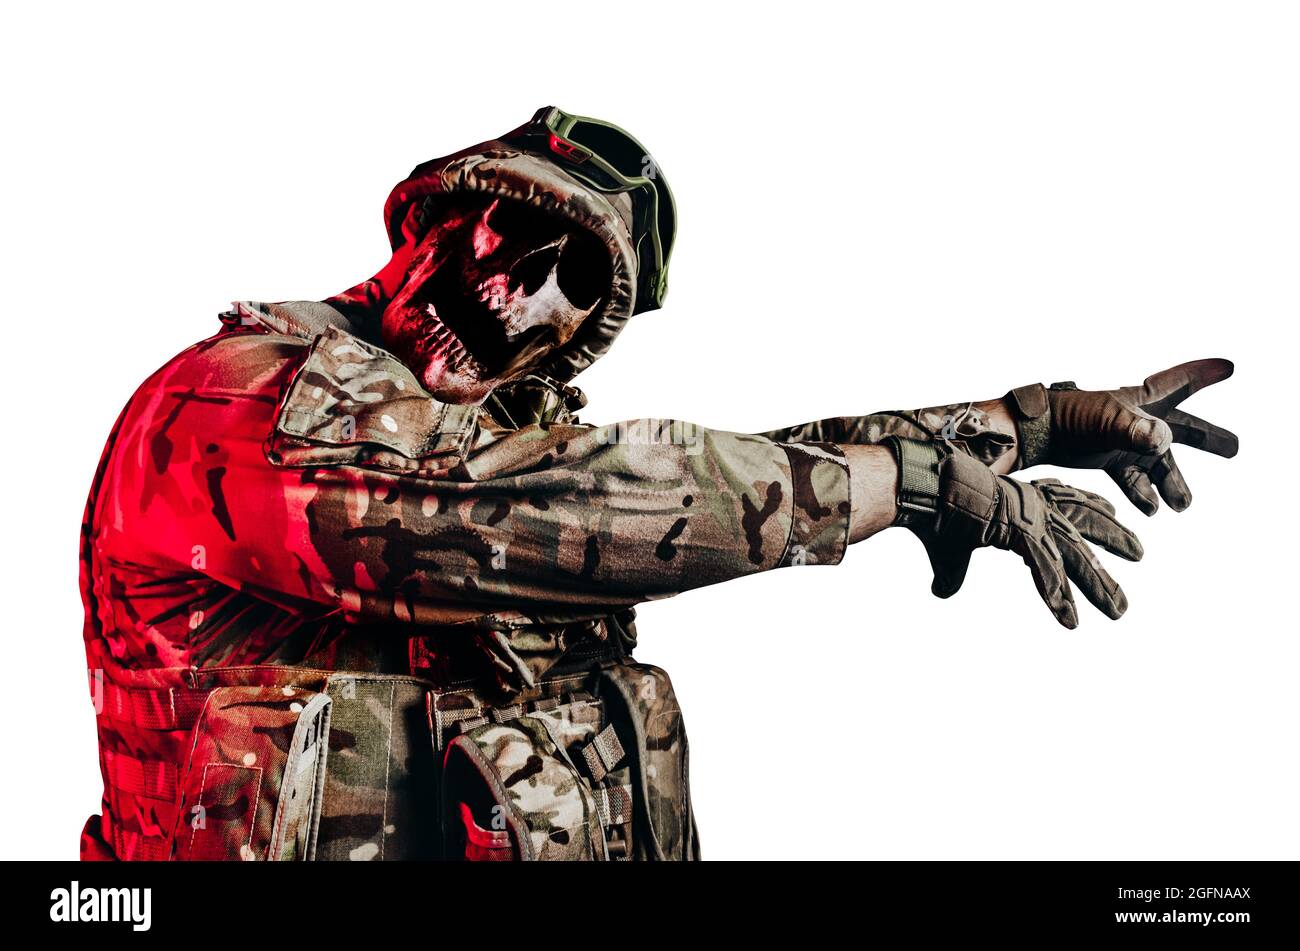 Isoliertes Foto von untoten Zombie-Soldat in Uniform und gepanzerte  Kleidung zu Fuß Pose mit erreichender Arme auf weißem Hintergrund  Stockfotografie - Alamy